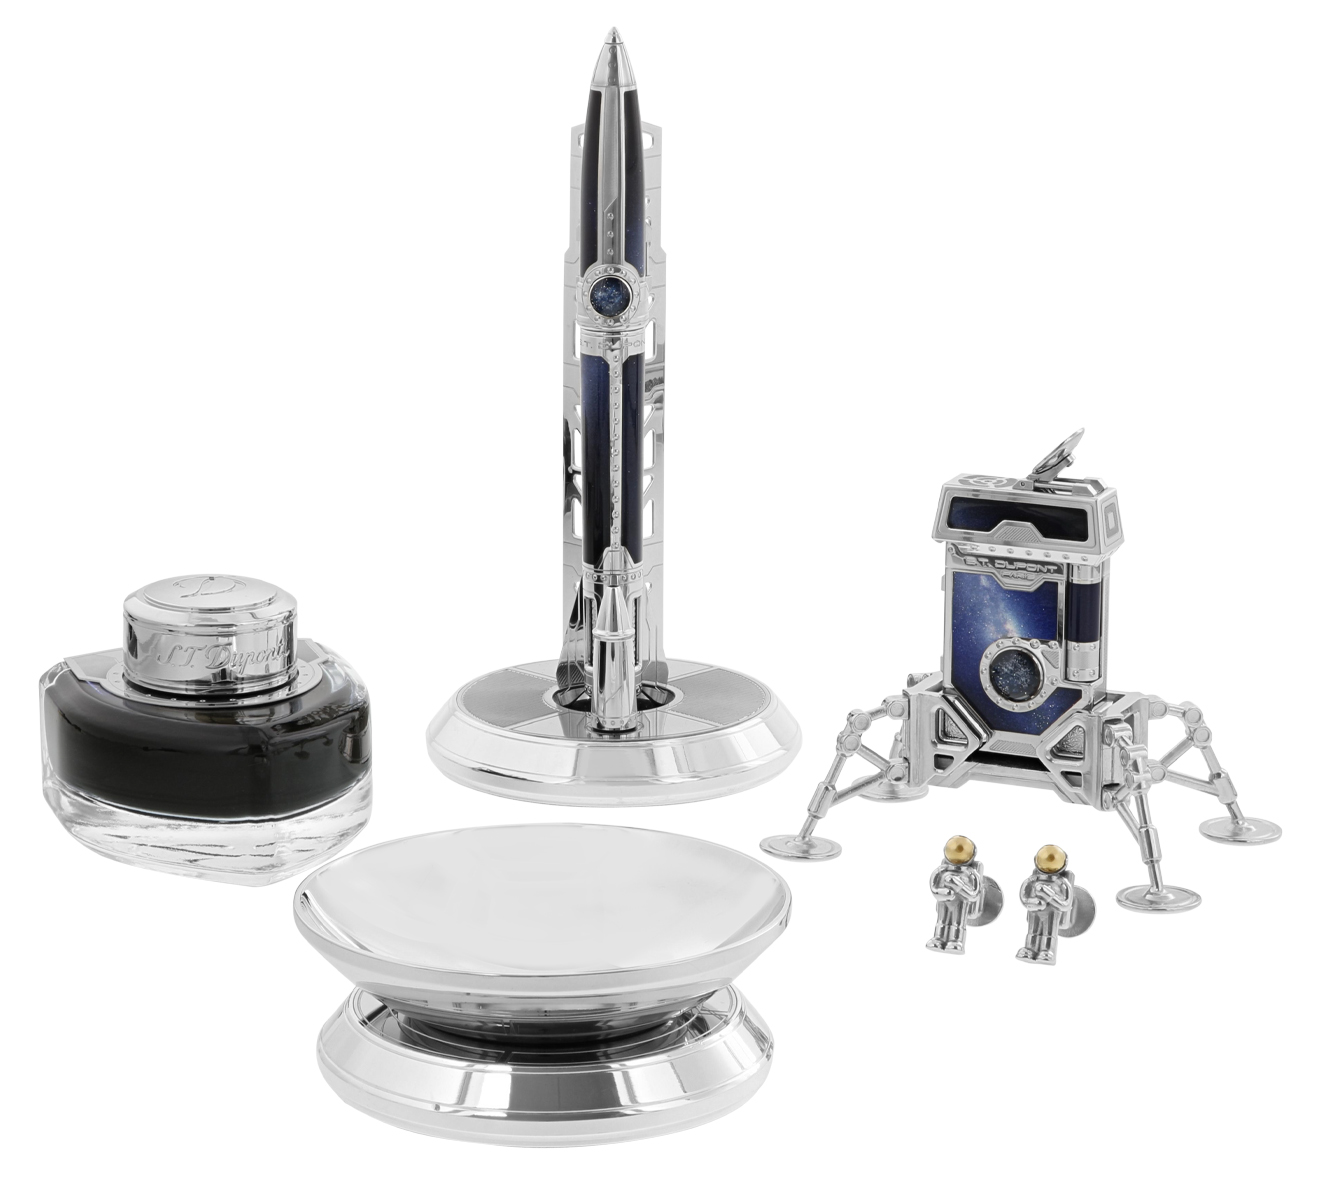 Подарочный набор Space Odyssey S.T. Dupont Limited Edition C2ODYSSEY - фото 1 – Mercury